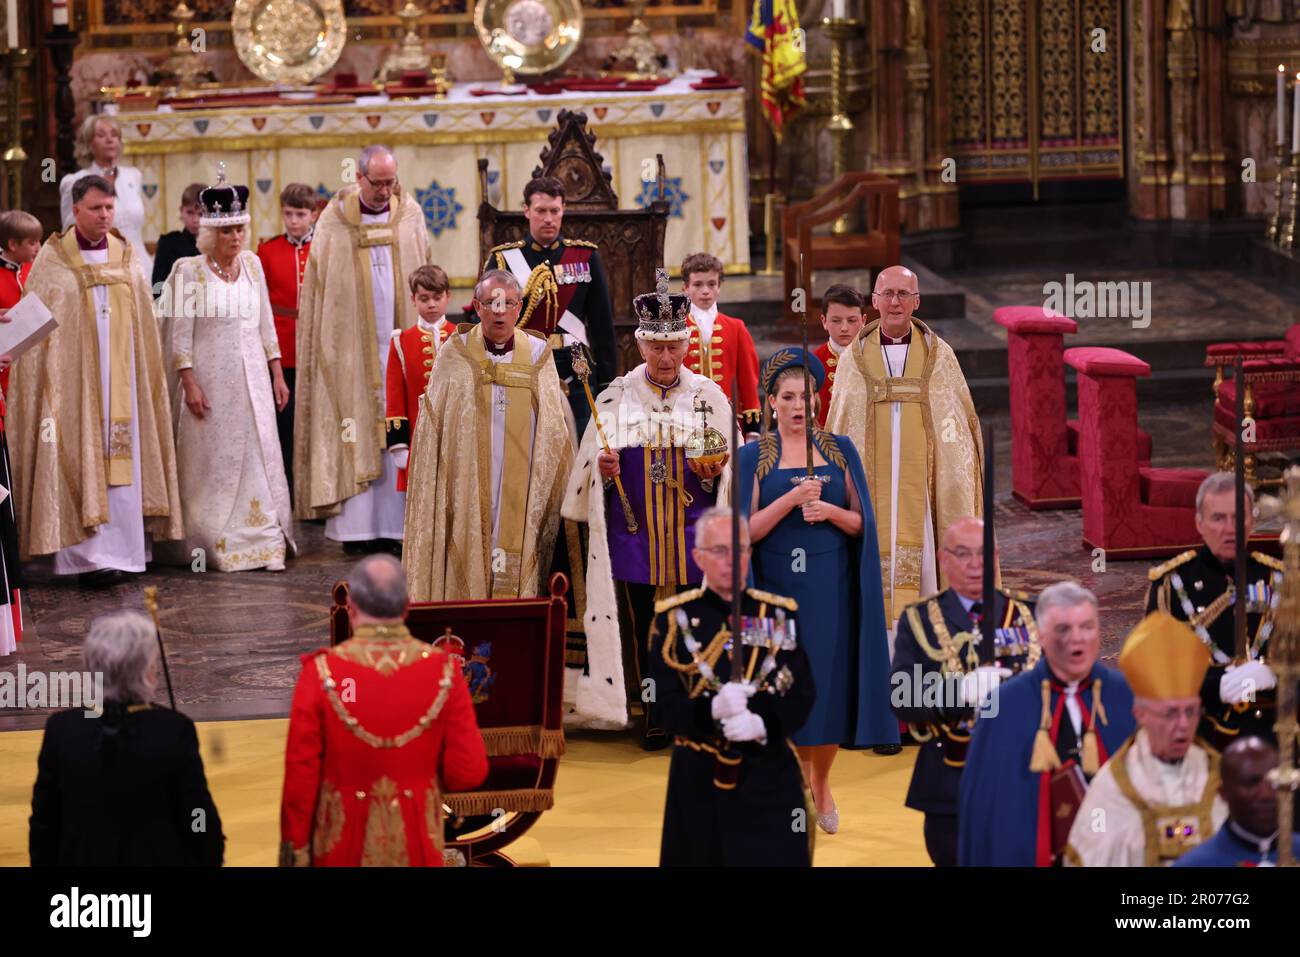 Le roi Charles III avec l'Orbe du souverain, en tant que Lord Président du Conseil, Penny Mordaunt, porte l'épée d'État, pendant son couronnement à l'abbaye de Westminster, Londres. Date de la photo: Samedi 6 mai 2023. Banque D'Images